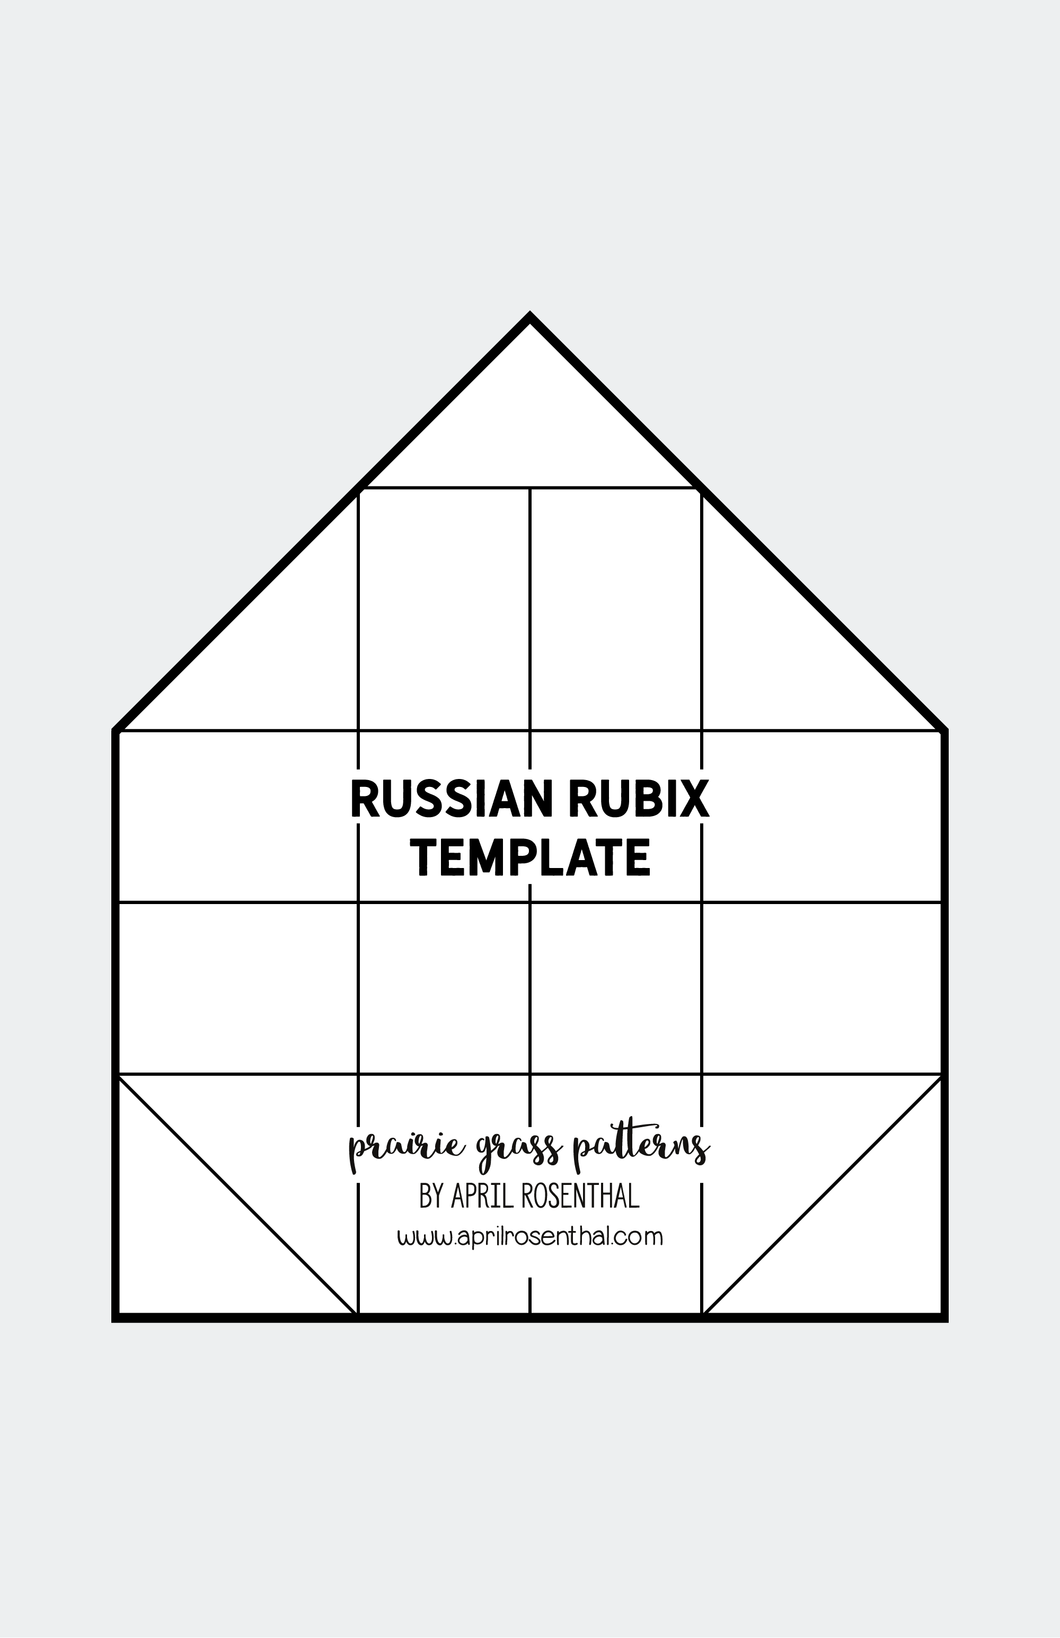 Russian Rubix Template